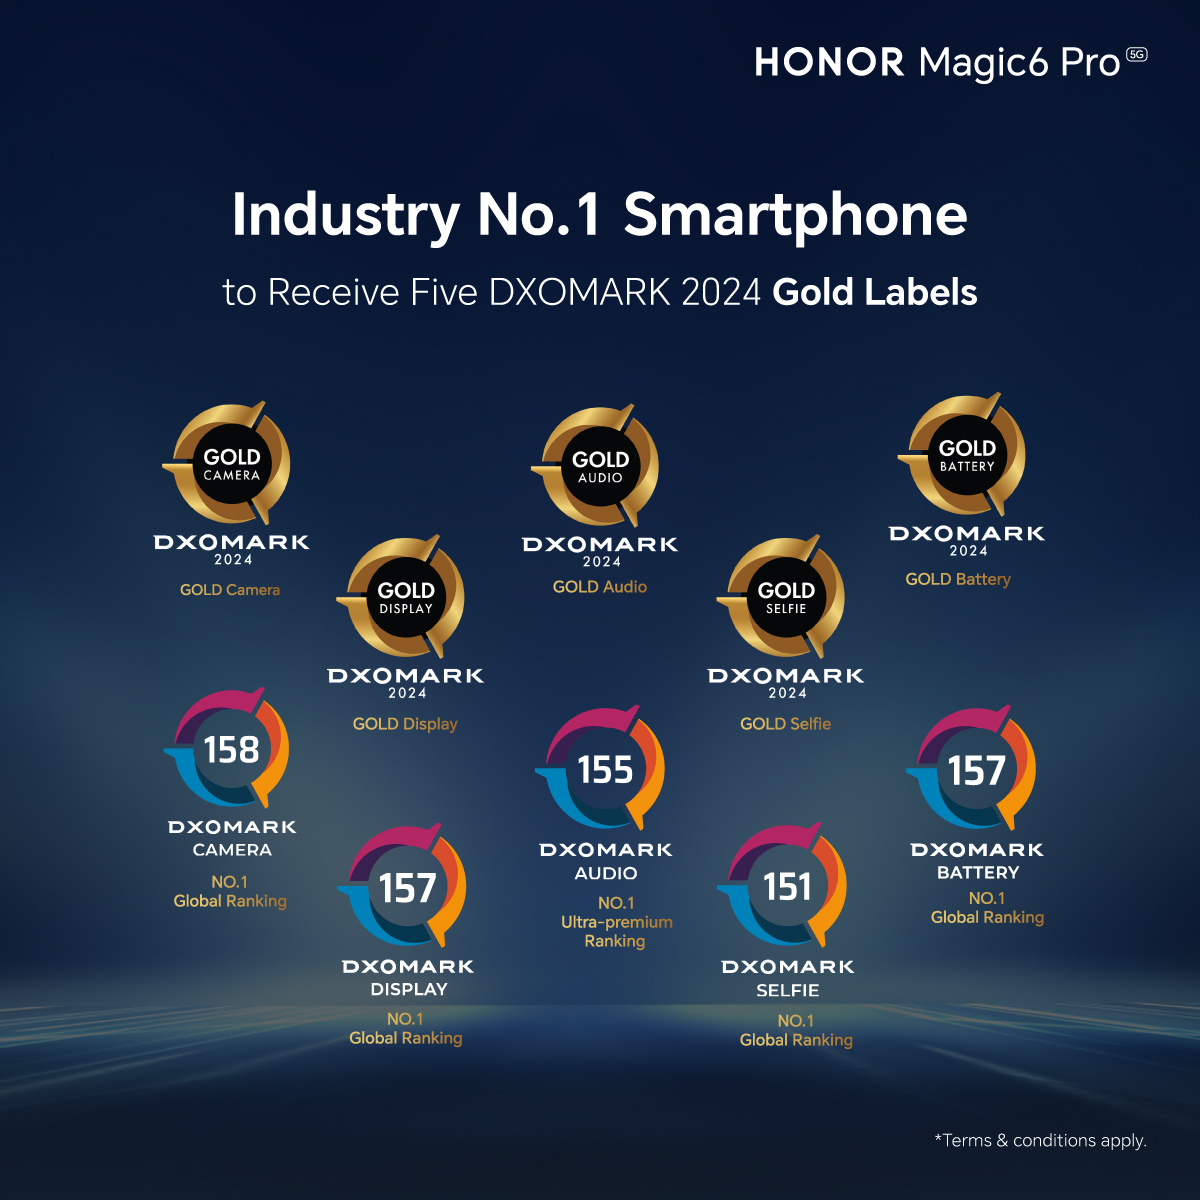 HONOR Magic6 Pro 3月28日全马开售，首销送总值高达1,197令吉礼品 3